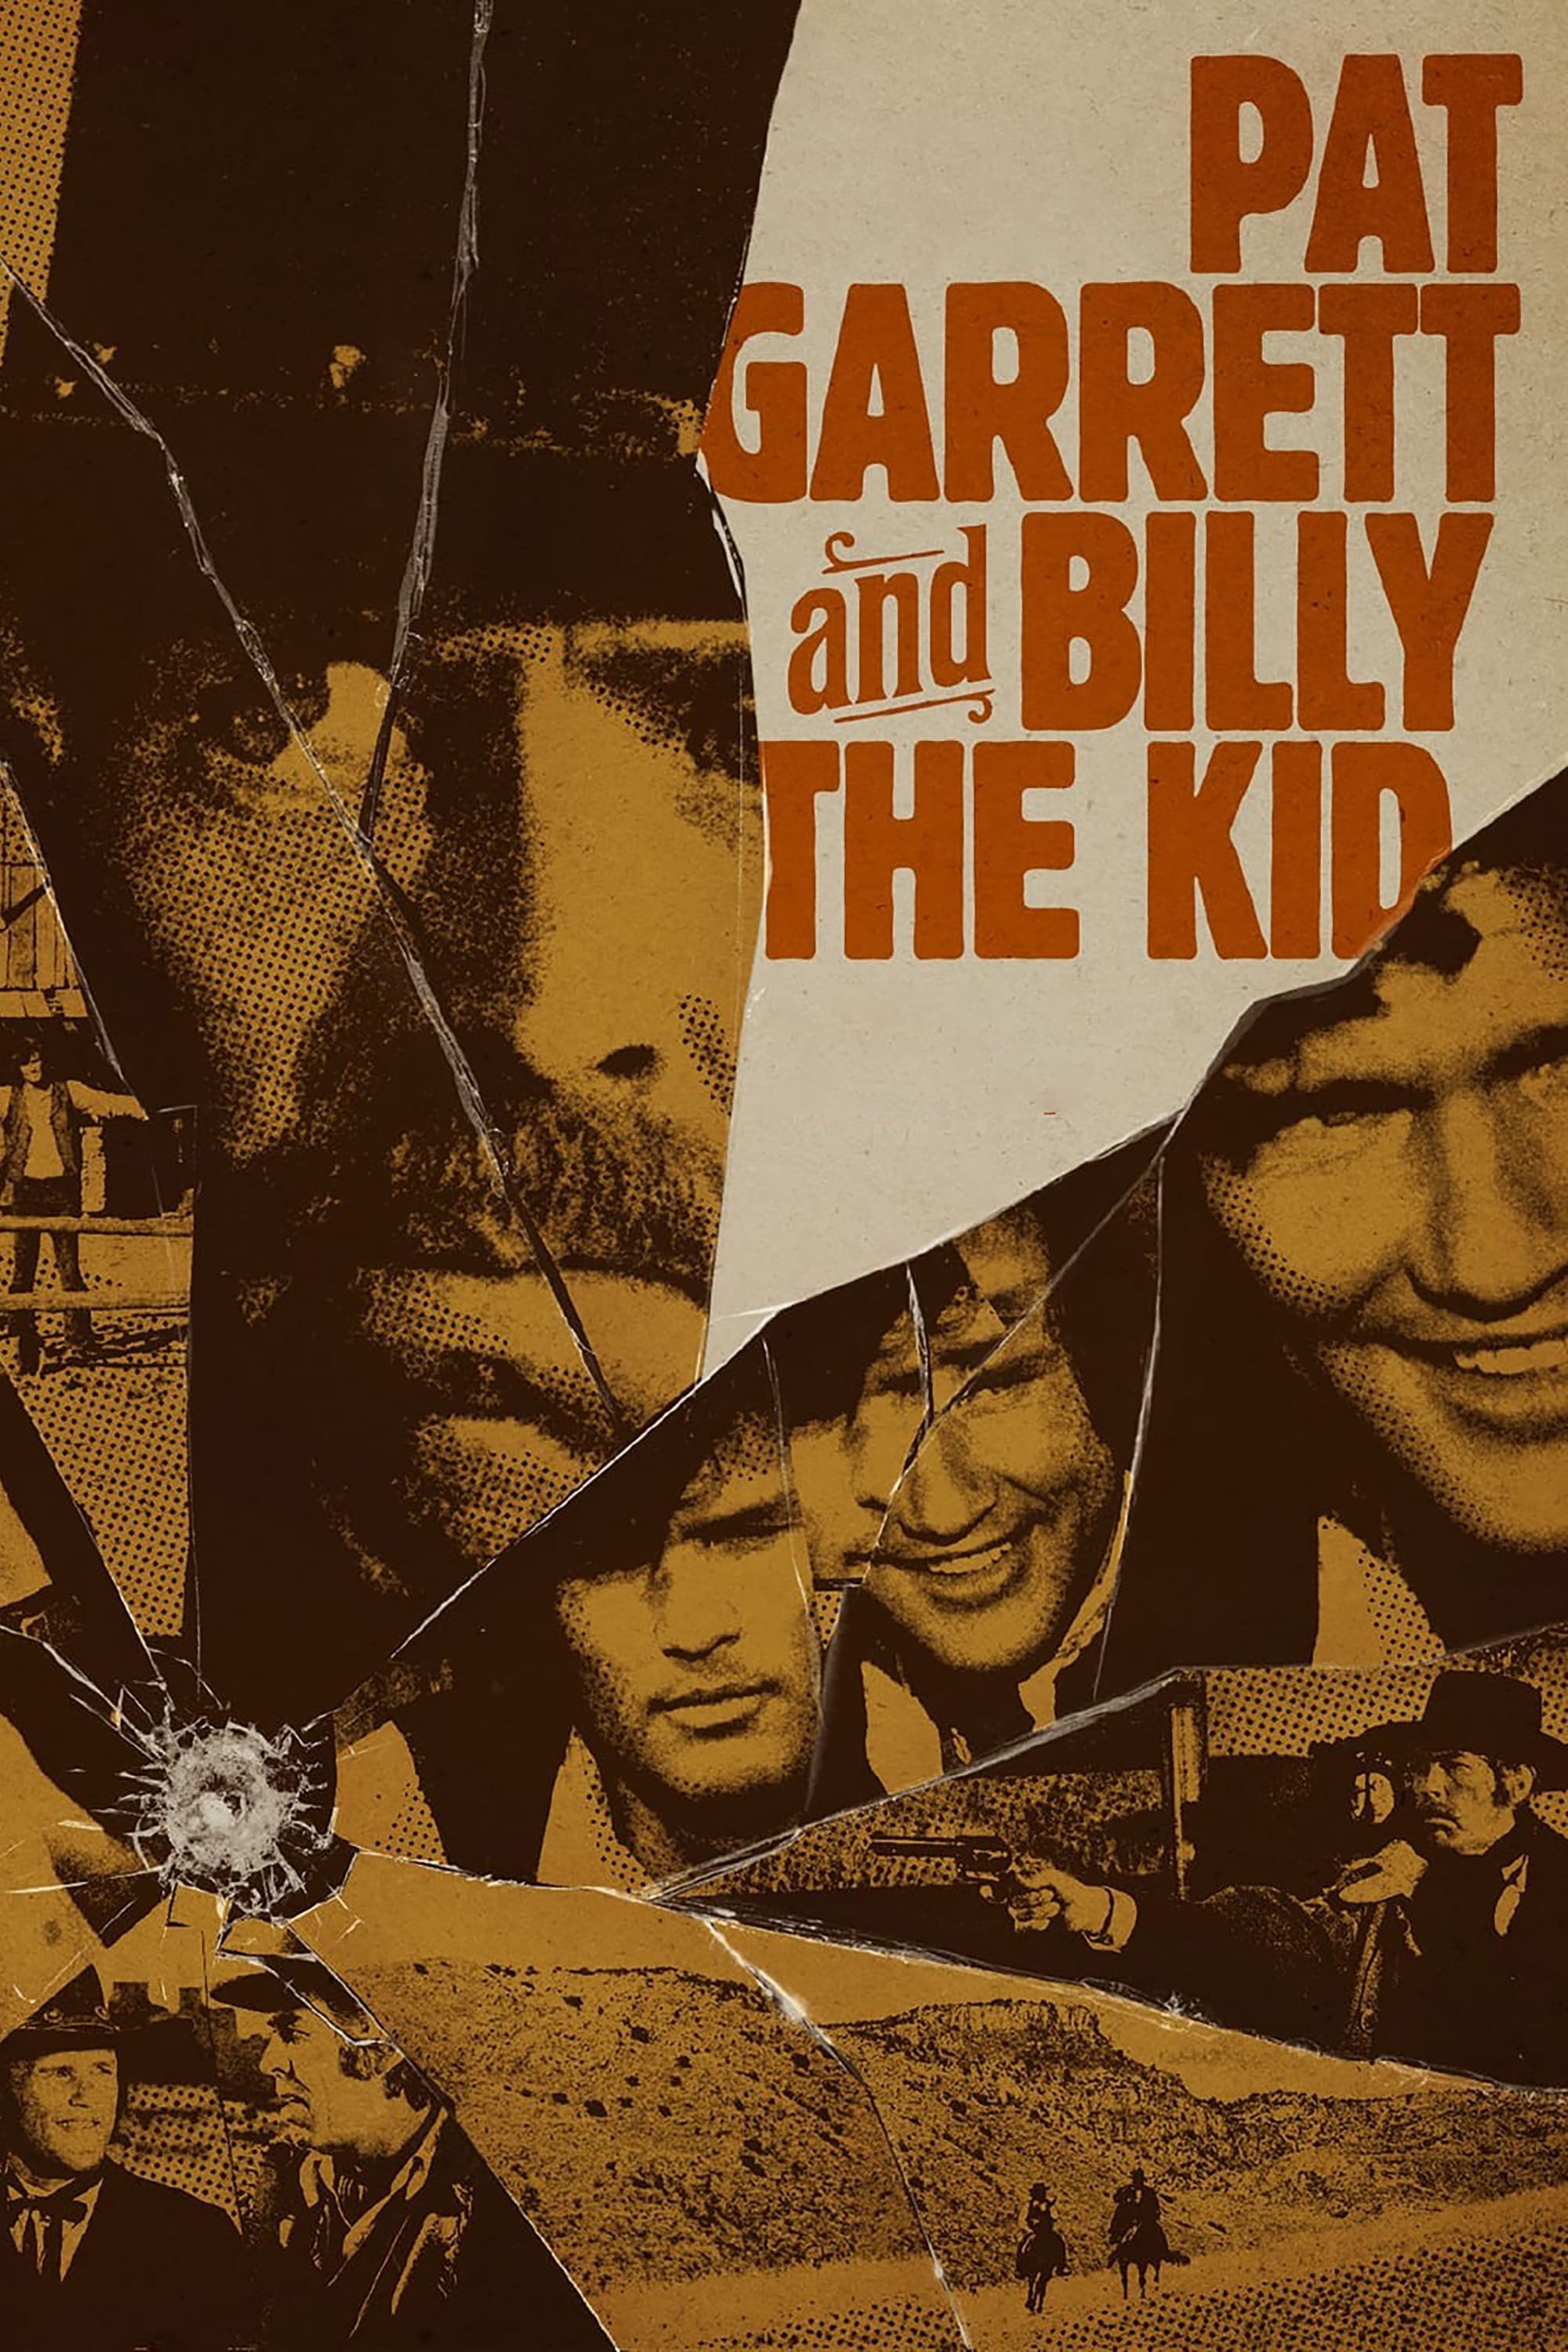 Pat Garrett jagt Billy the Kid (1973)